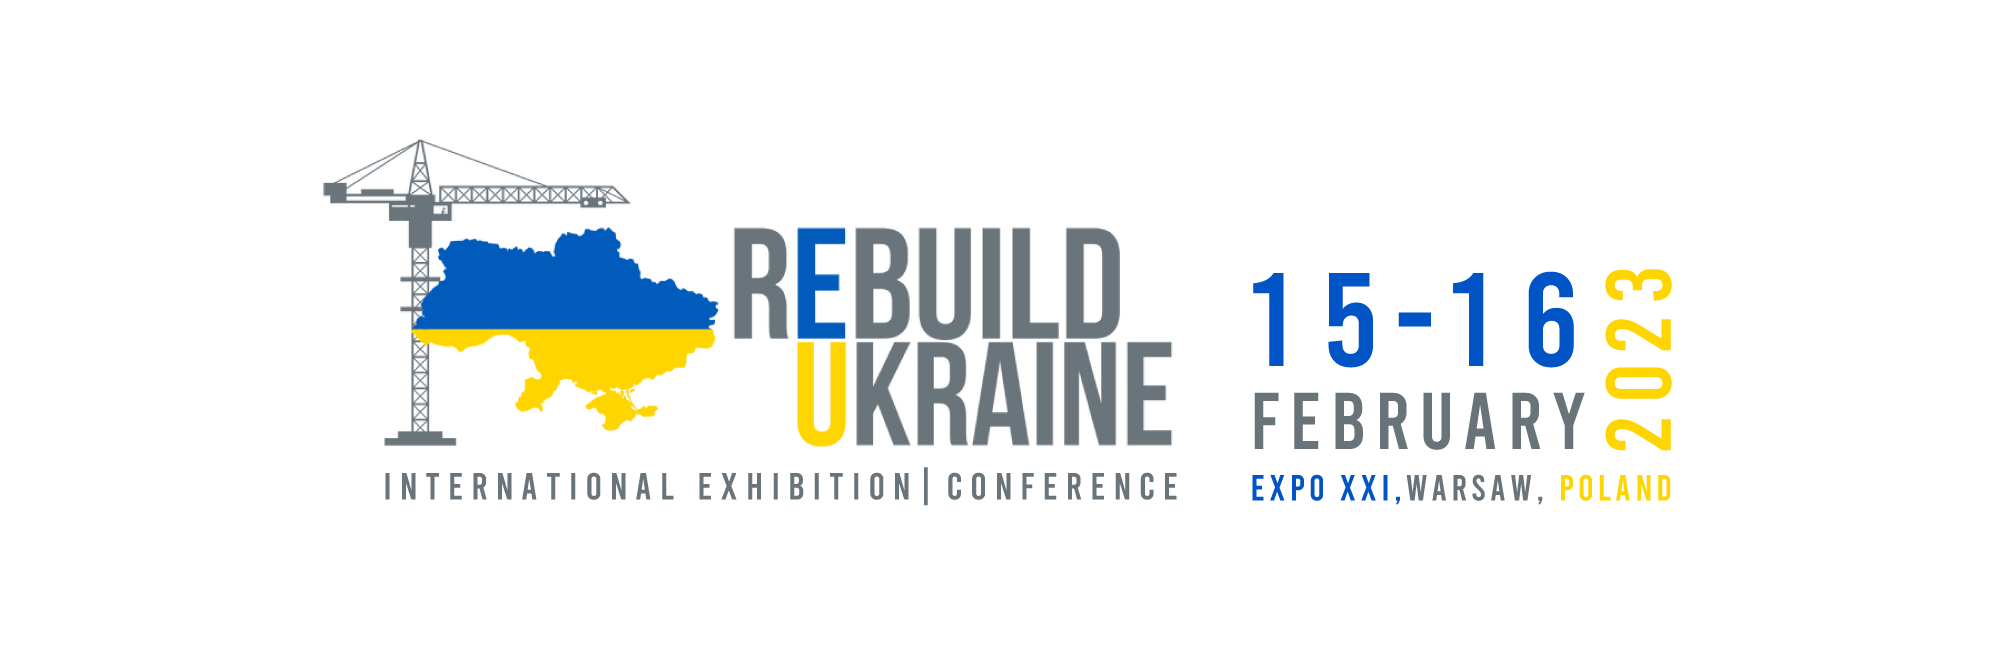 rebuild ukraine